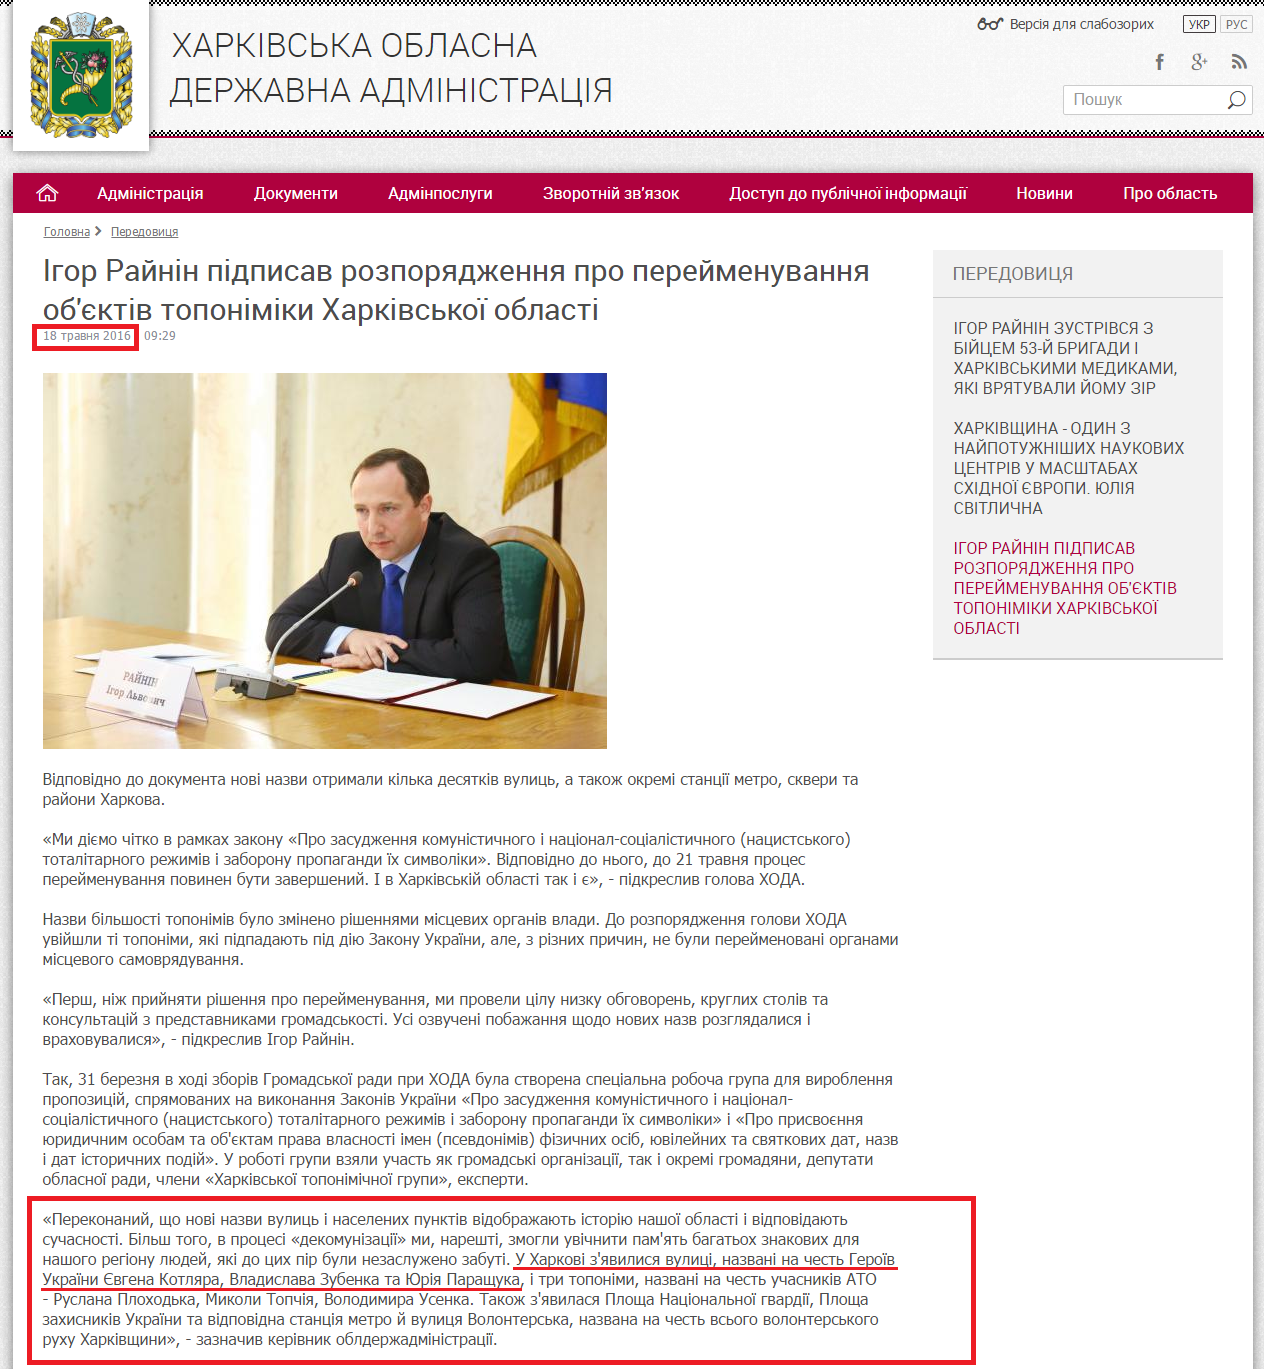 http://kharkivoda.gov.ua/36/80789